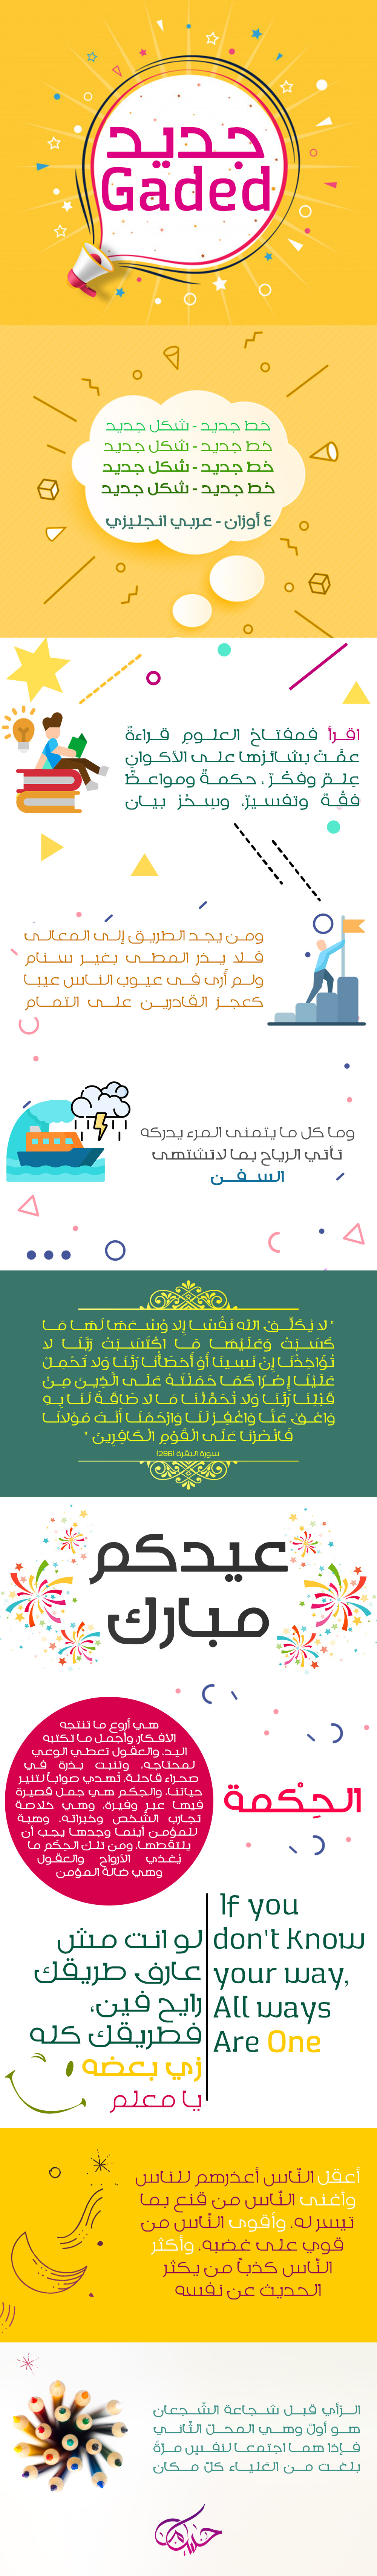  دانلود فونت عربی و انگلیسی جدید Gaded Arabic & English Font